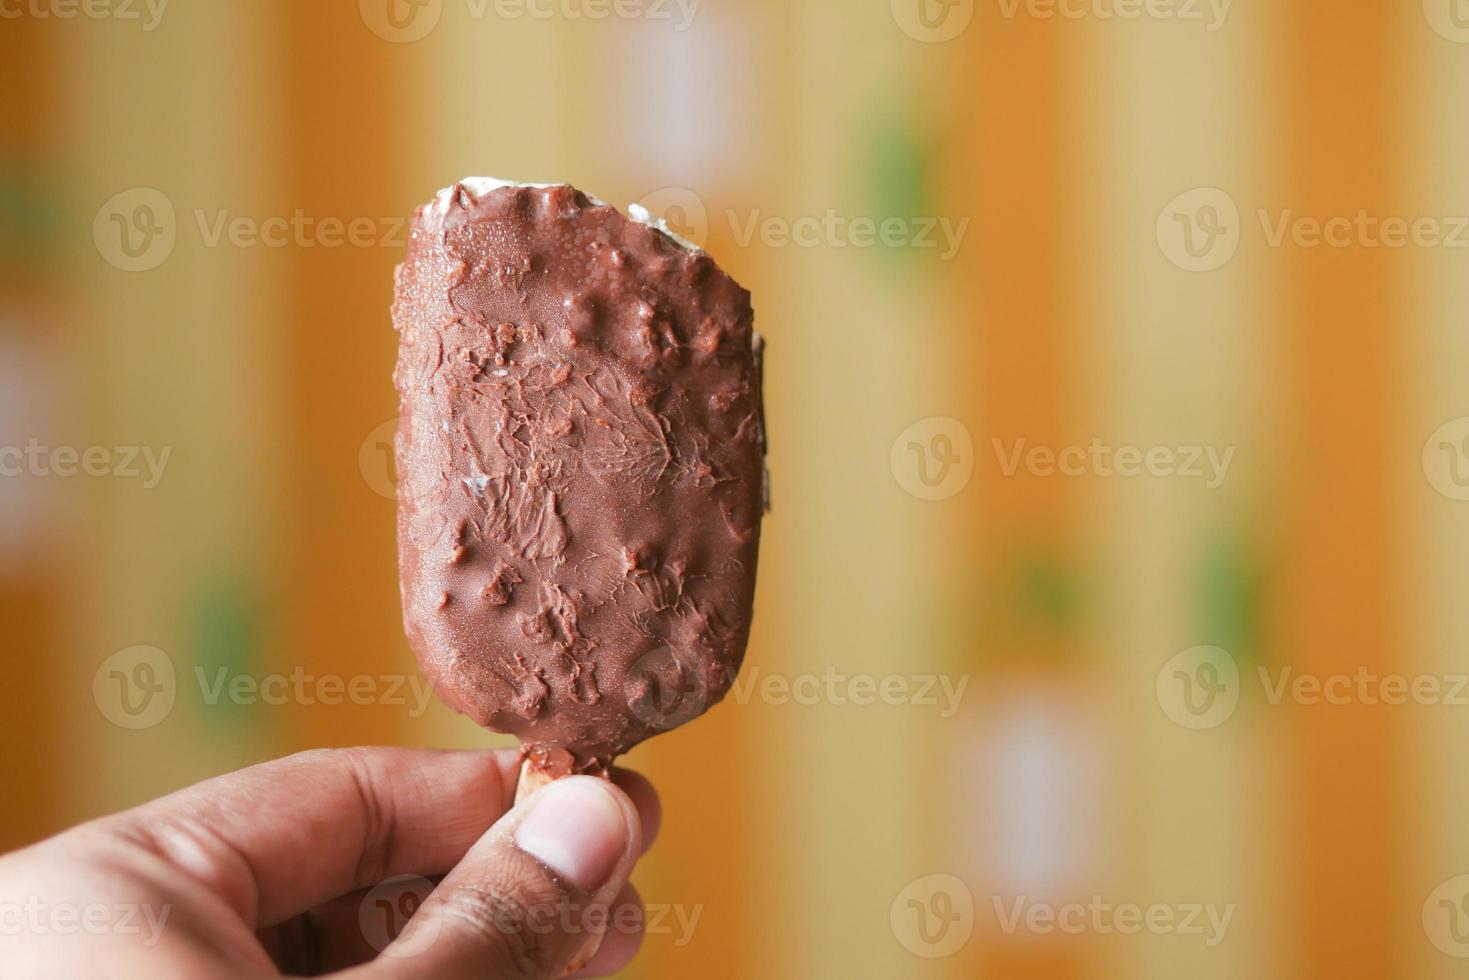 hombres jóvenes comiendo hielo con sabor a chocolate foto